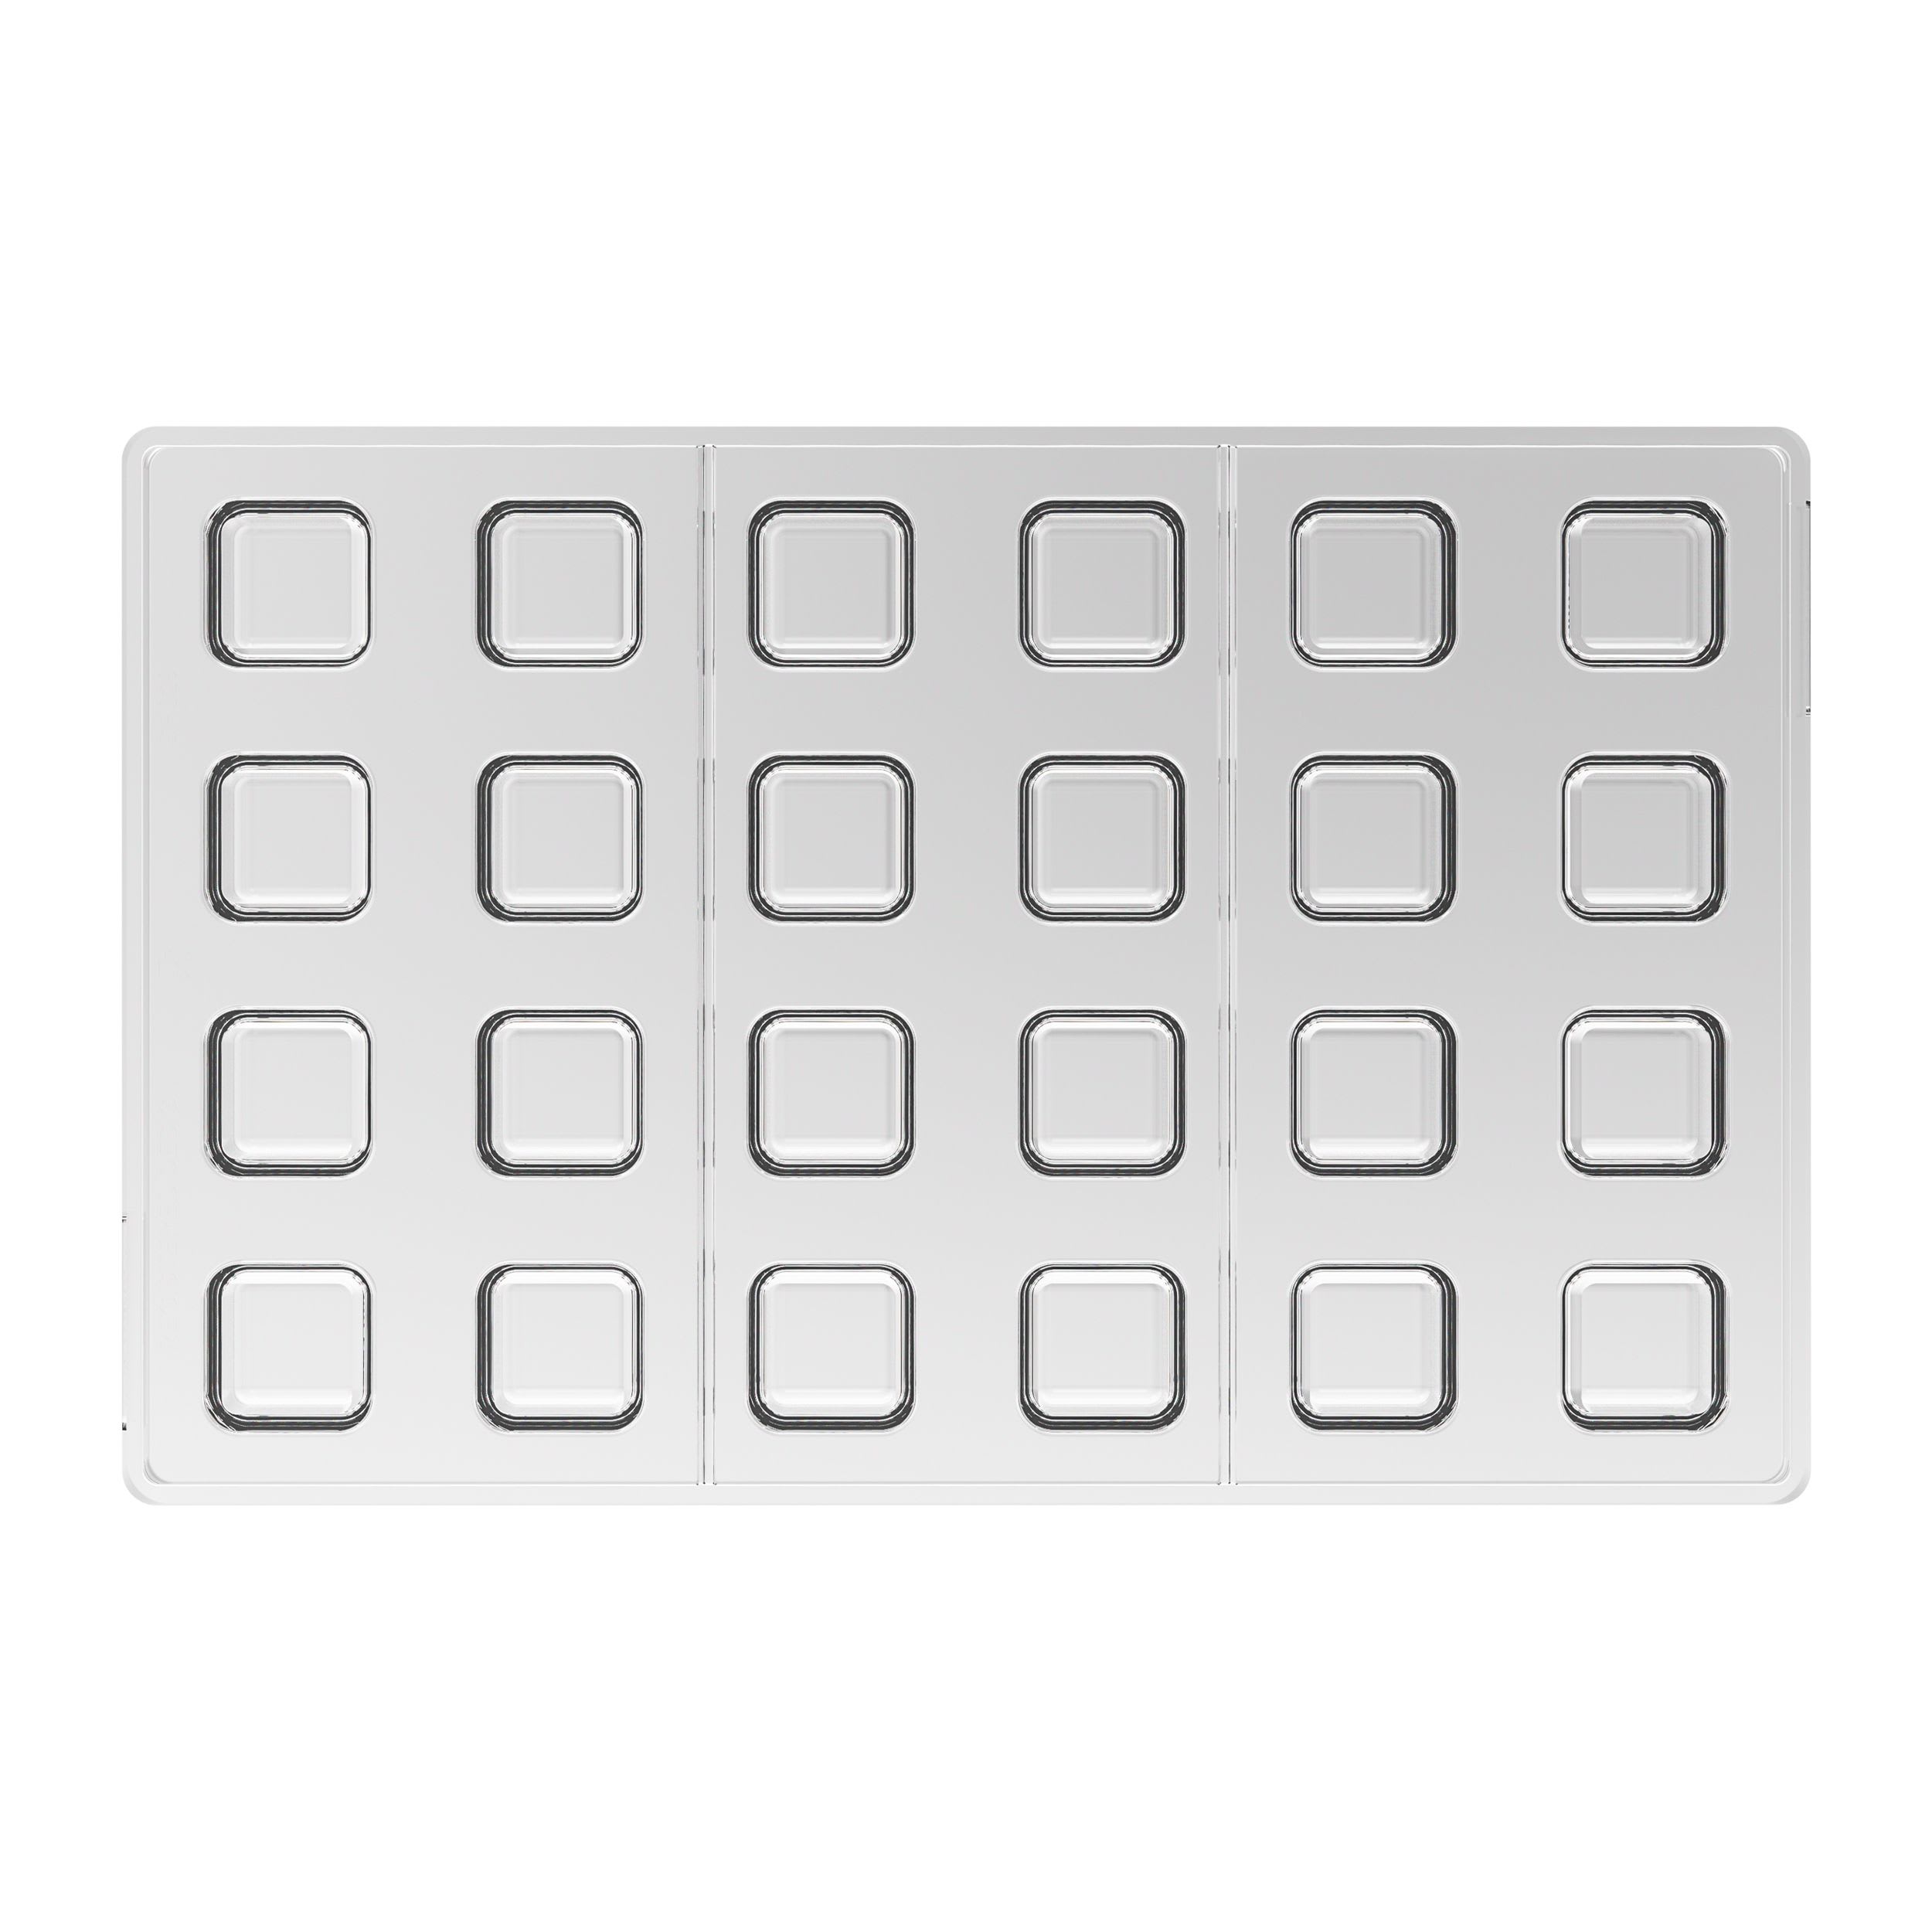 Moule à pâtisserie Cube Silikomart Dimension (mm) 8x 50x50x50